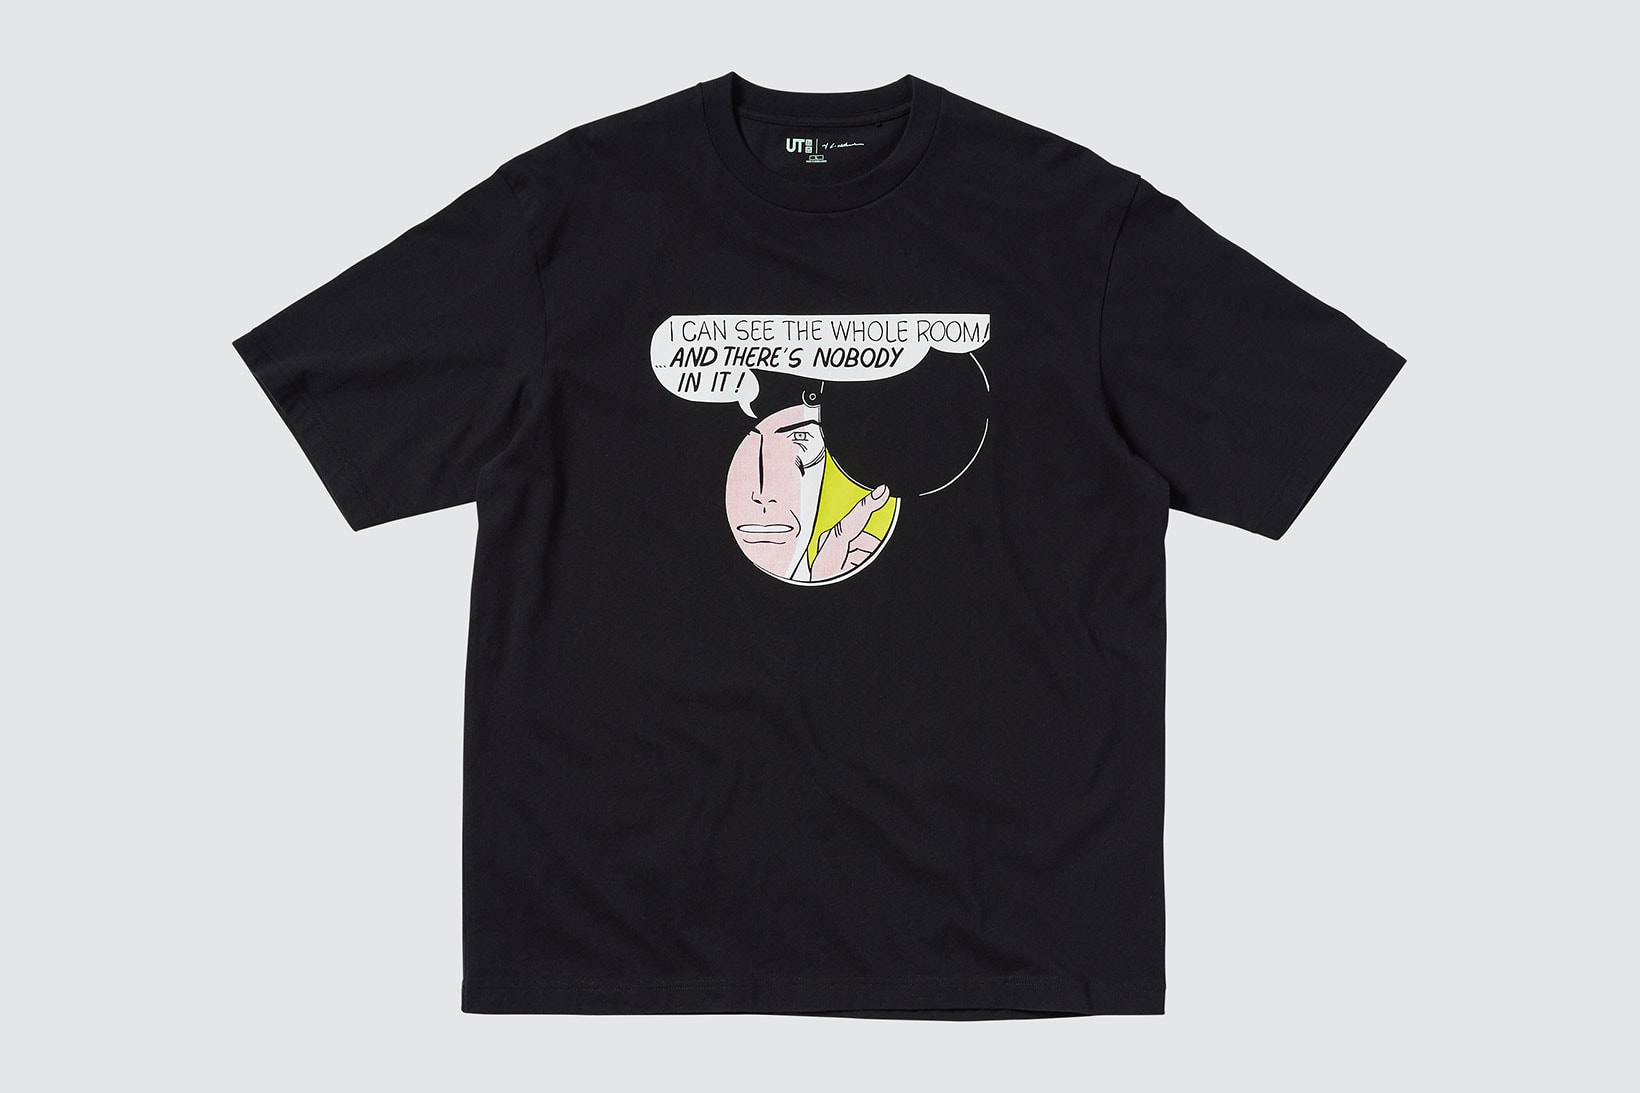 uniqlo ut roy lichtenstein american pop art collaboration t-shirts black graphic